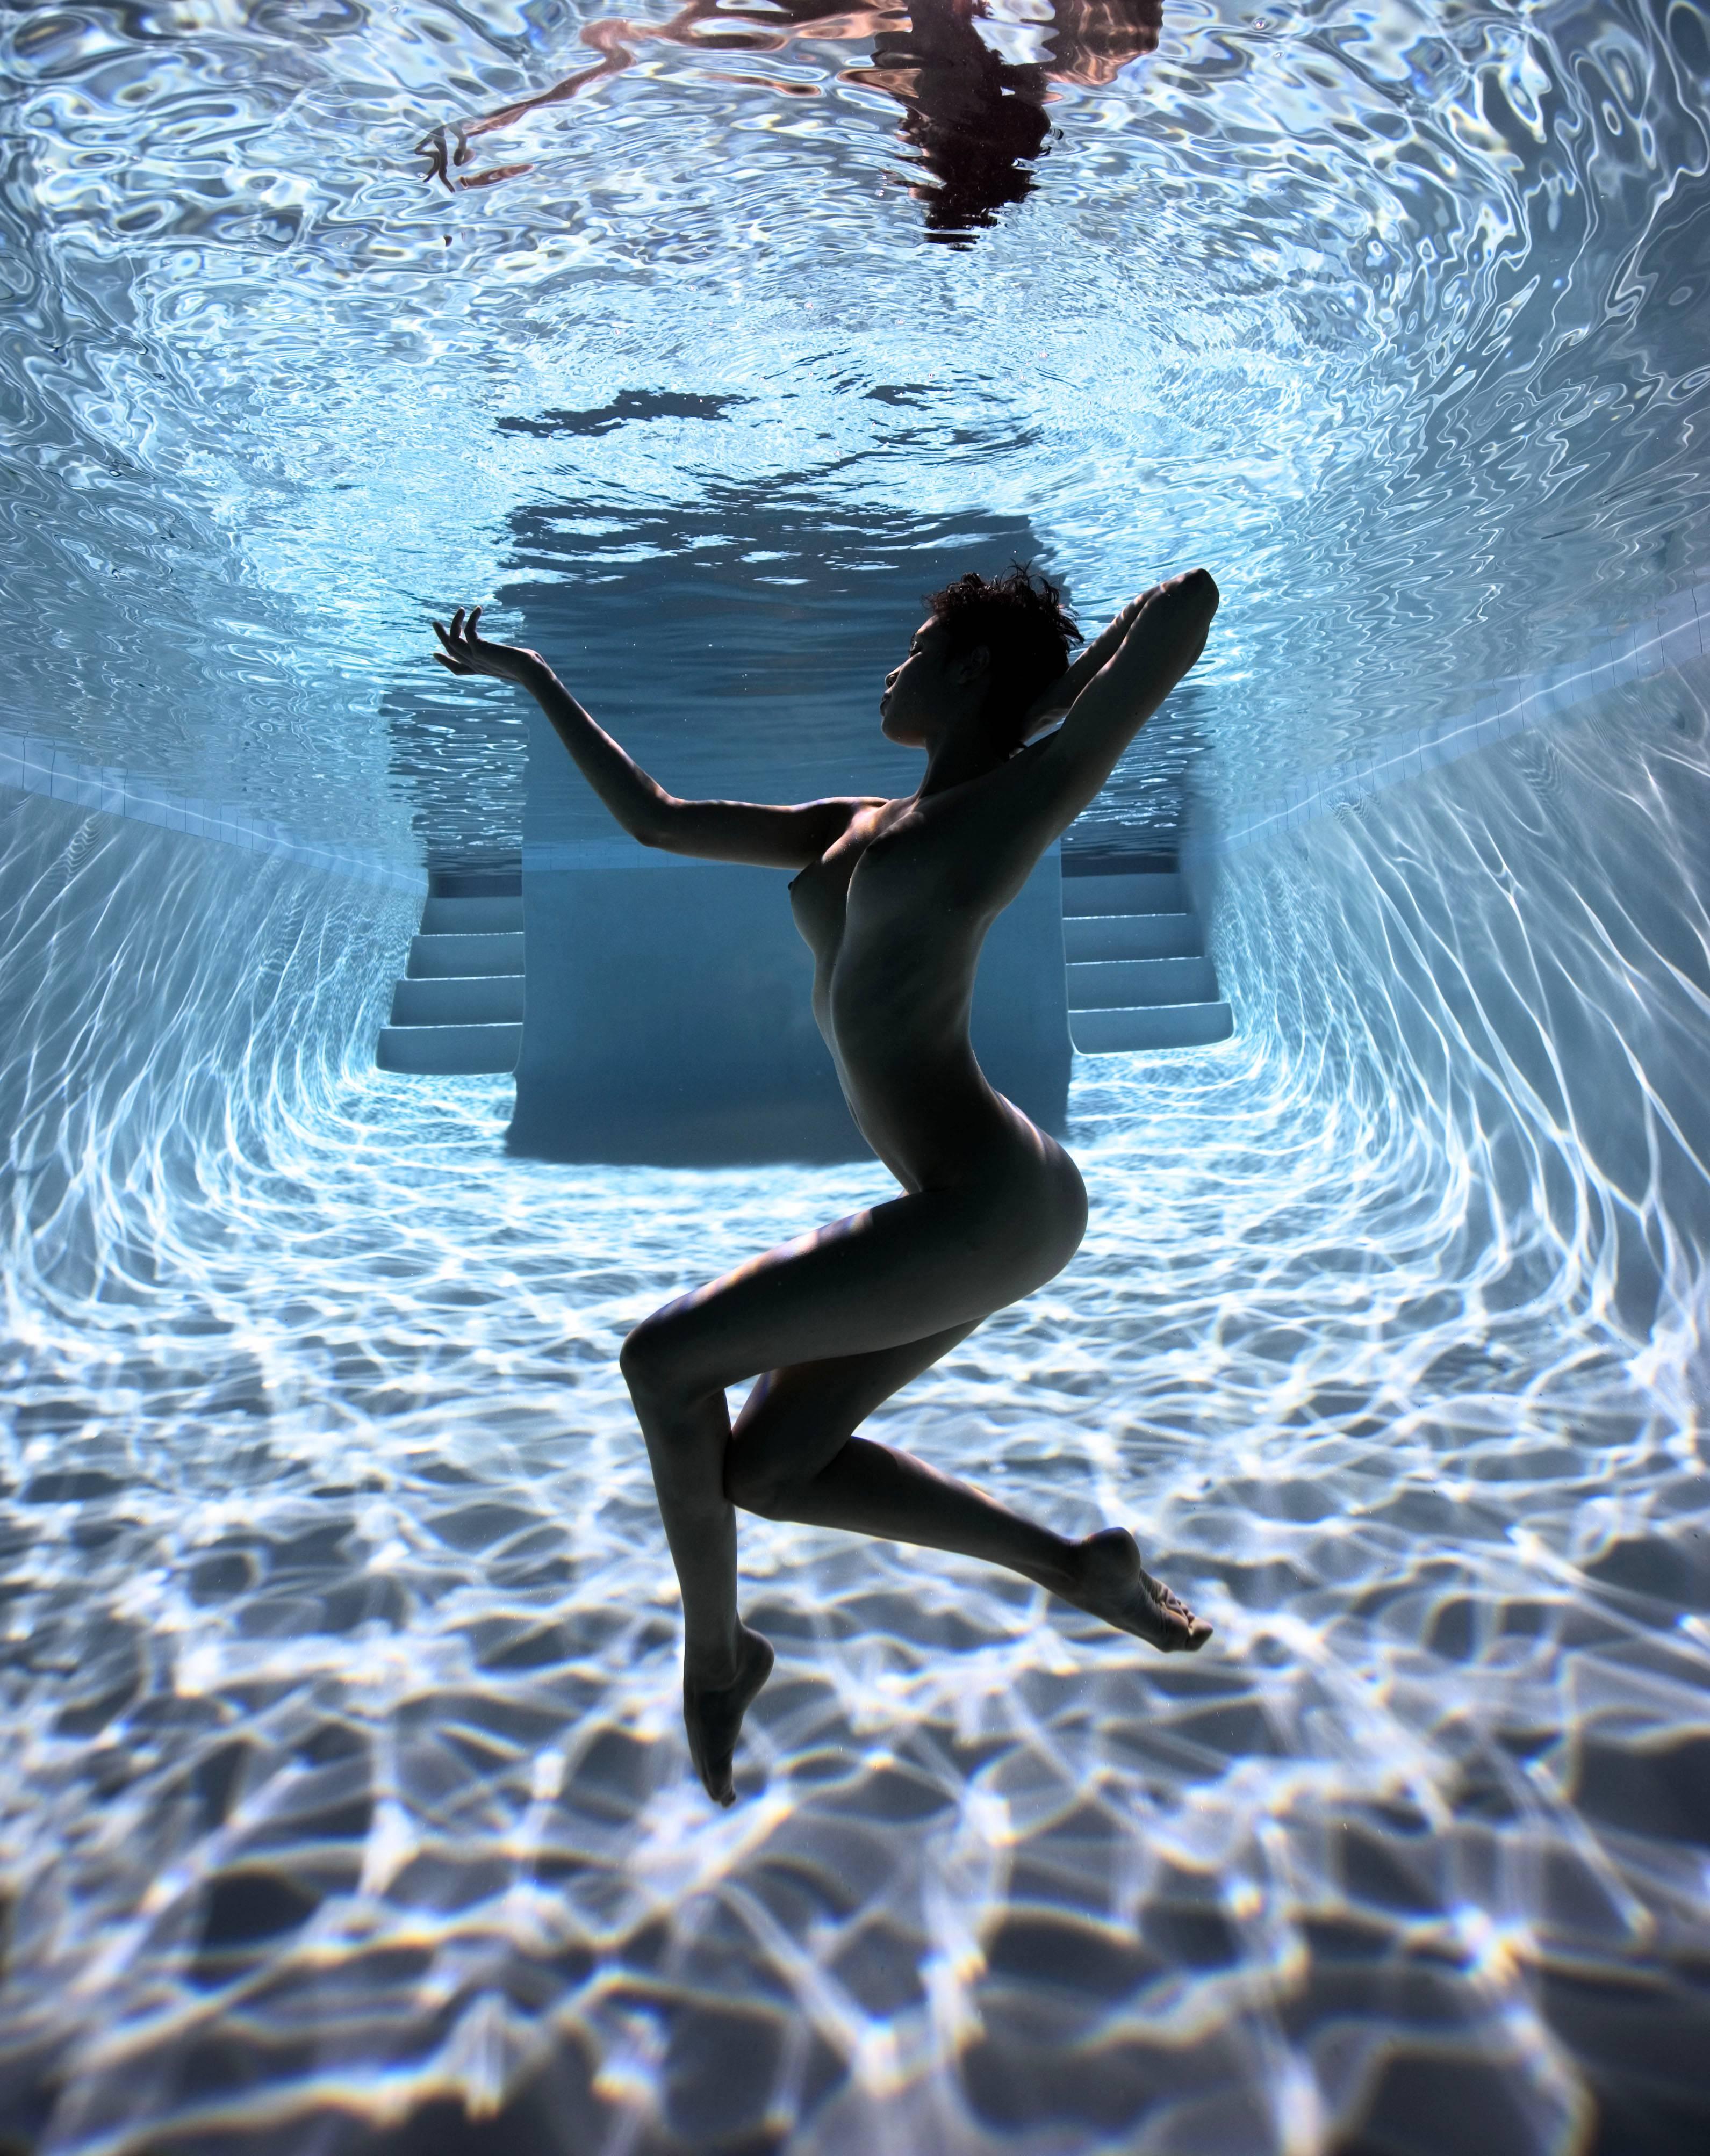 Howard Schatz Nude Photograph - Underwater Study #2826